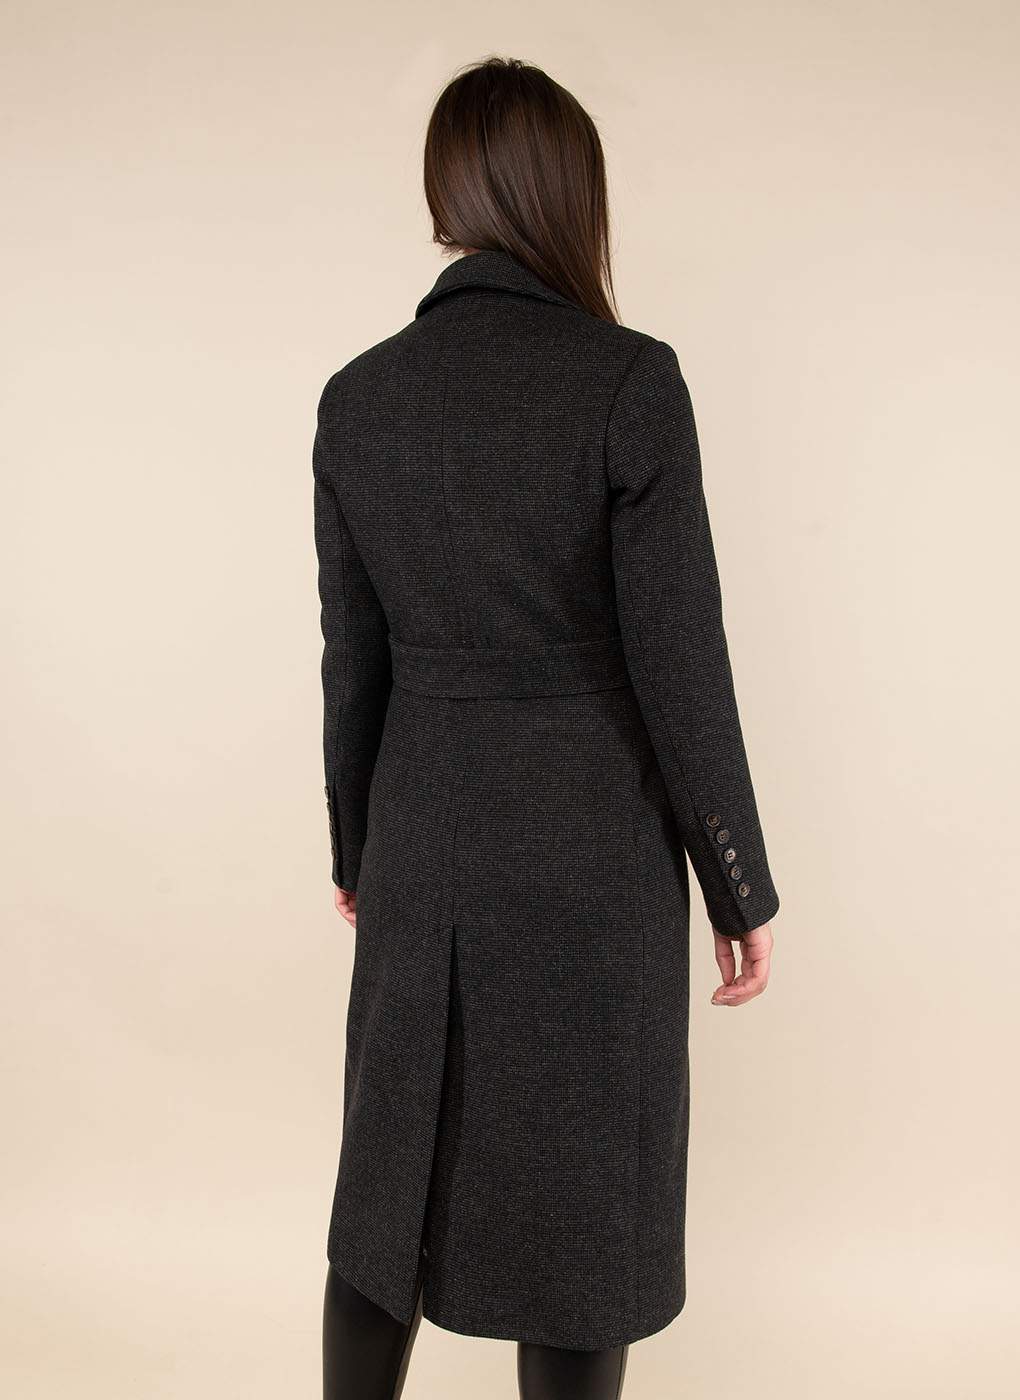 Пальто женское Каляев 52049 черное 46 RU